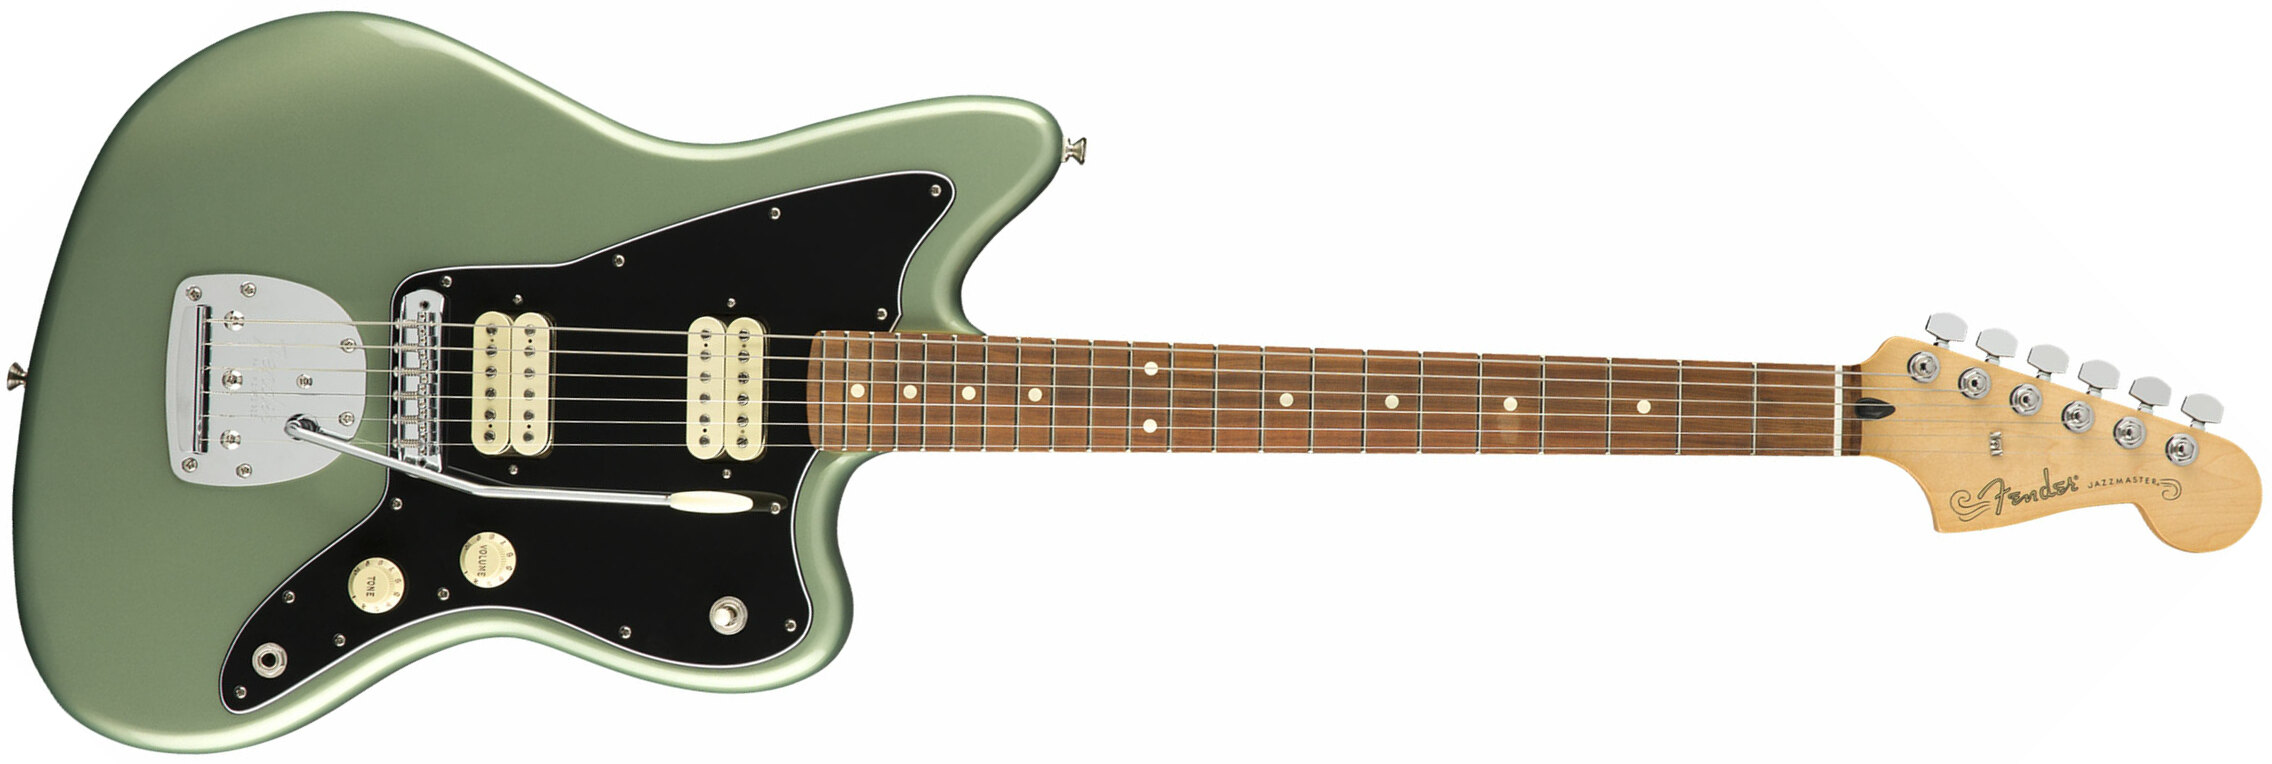 Fender Jazzmaster Player Mex Hh Pf - Sage Green Metallic - Retro-rock elektrische gitaar - Main picture